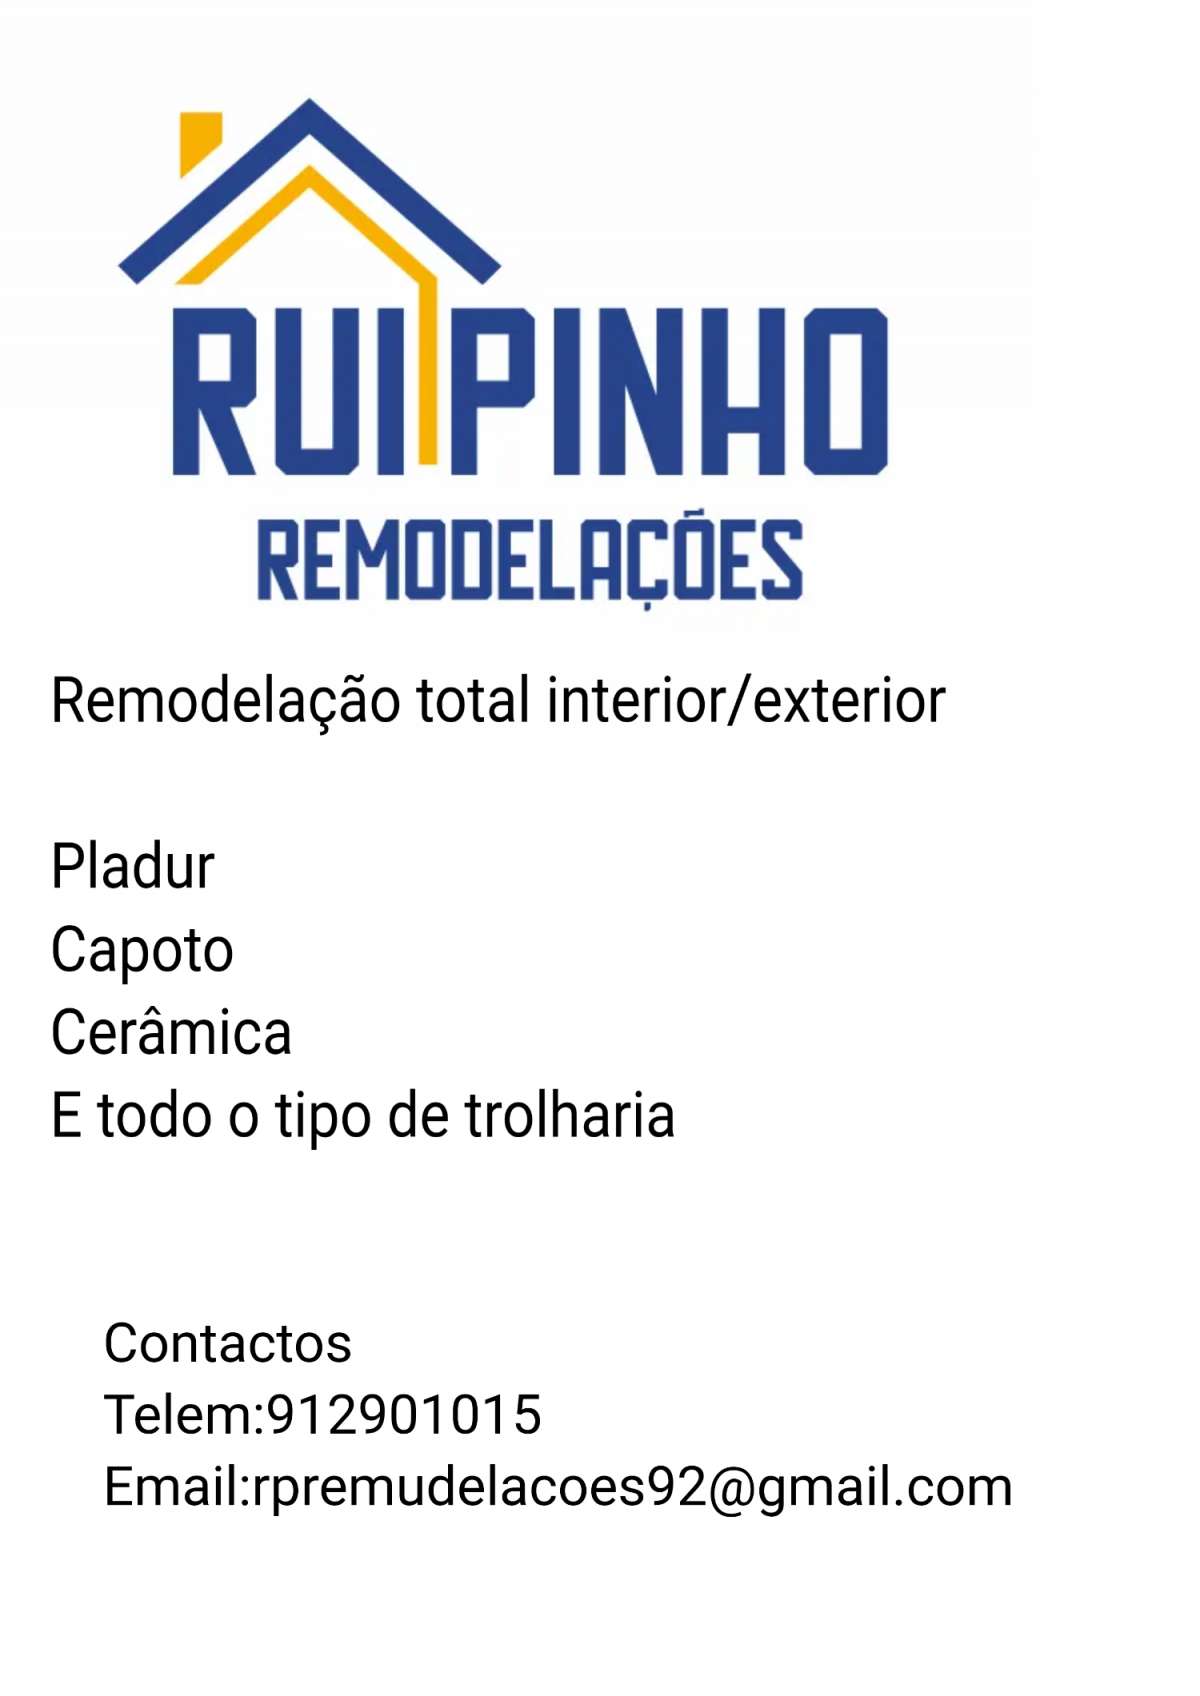 Rui Pinho - Murtosa - Obras em Casa